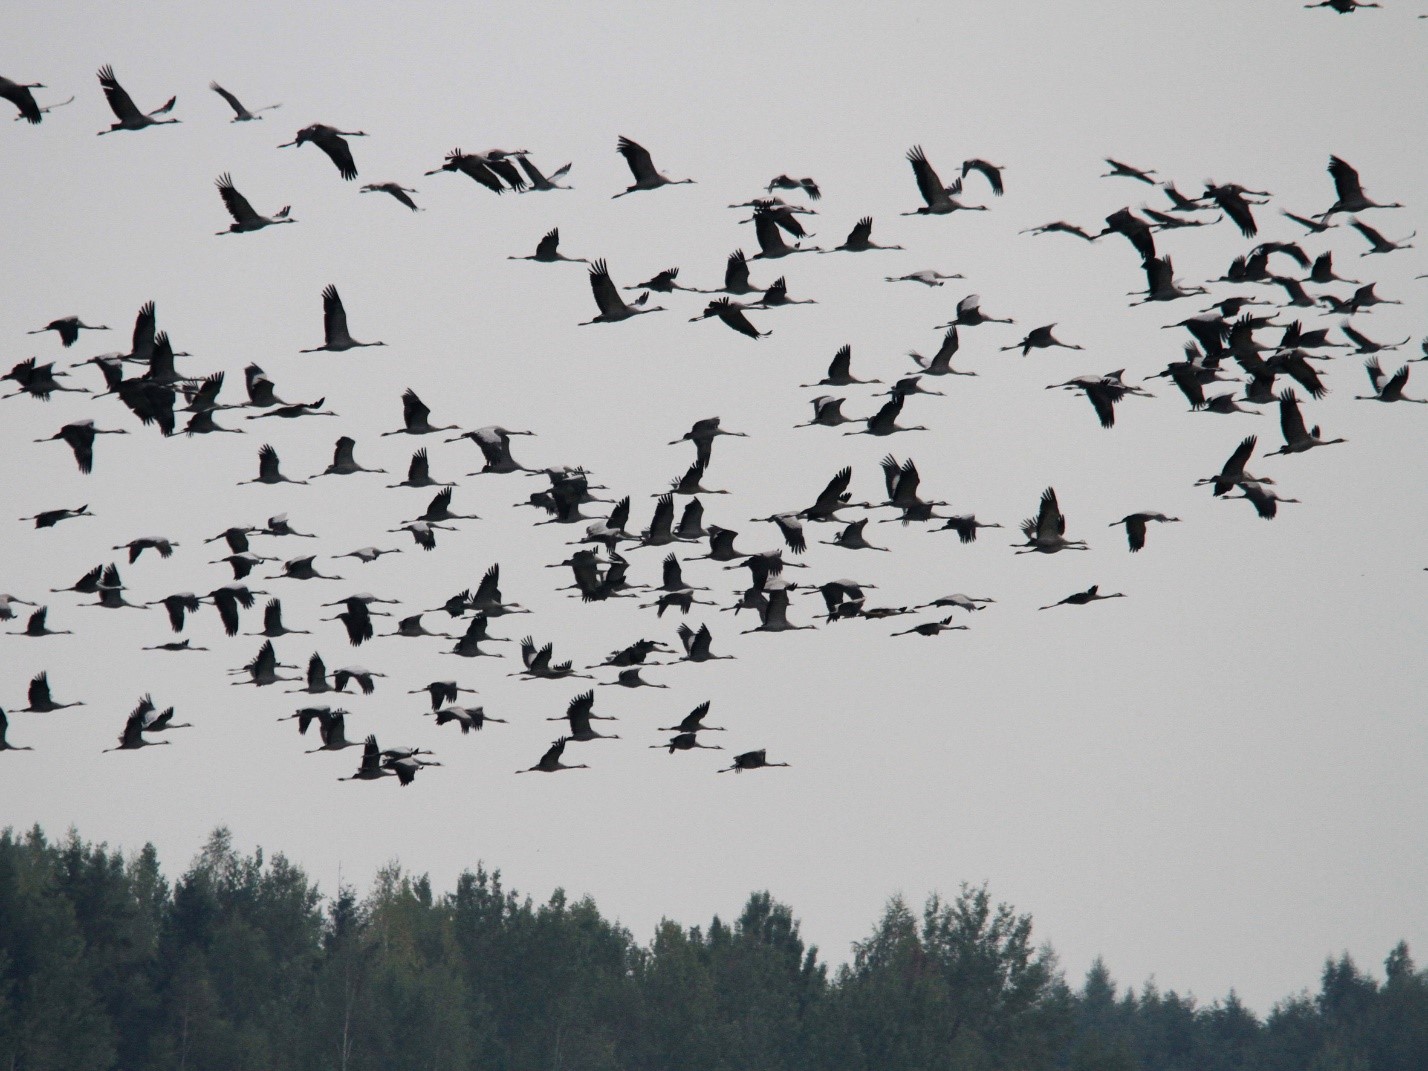 Birds unity. Миграция птиц. Птицы Рязанской области зимой летающих стаями. Птичка в вышине. Ноябрь птицы улетают.